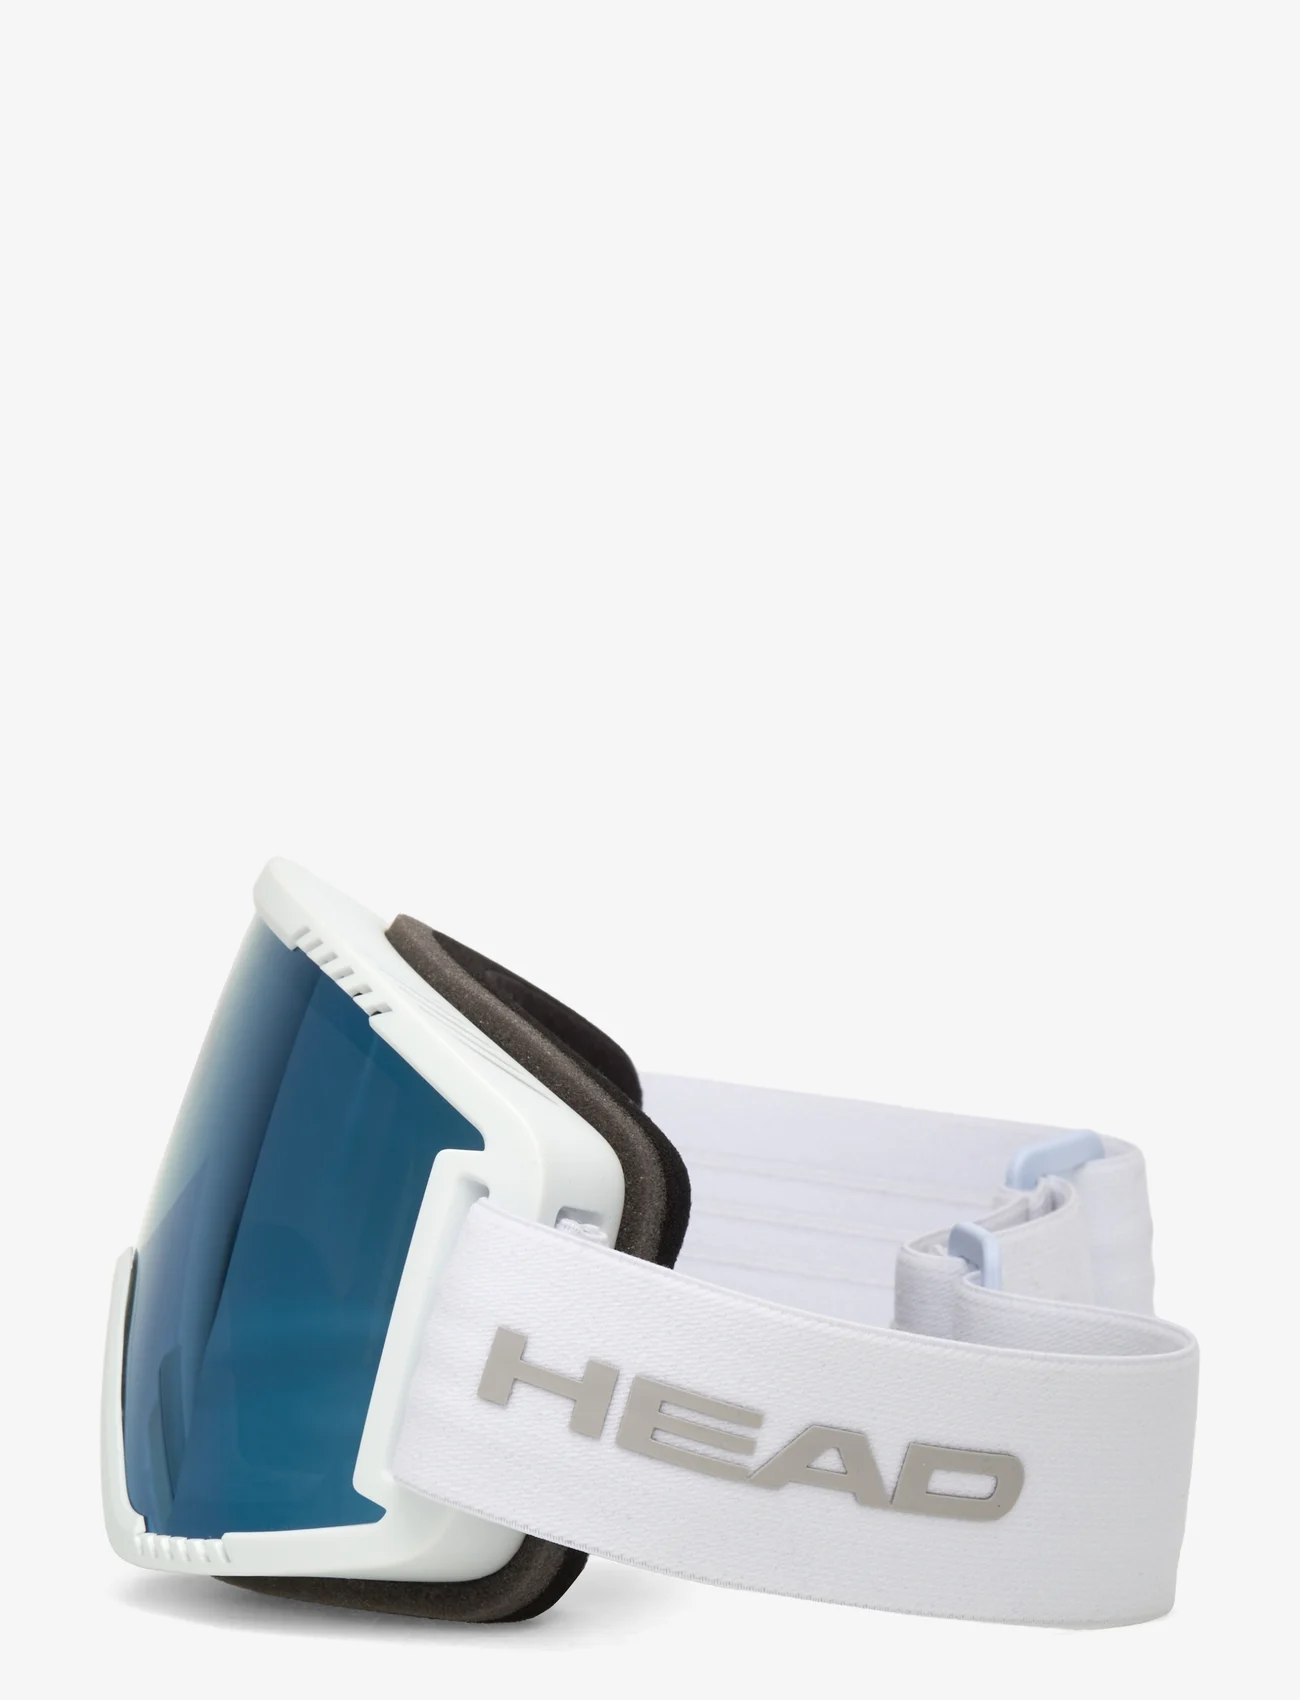 Head - CONTEX SKI & SNOWBOARD GOGGLE - wintersportausrüstung - blue/white - 1